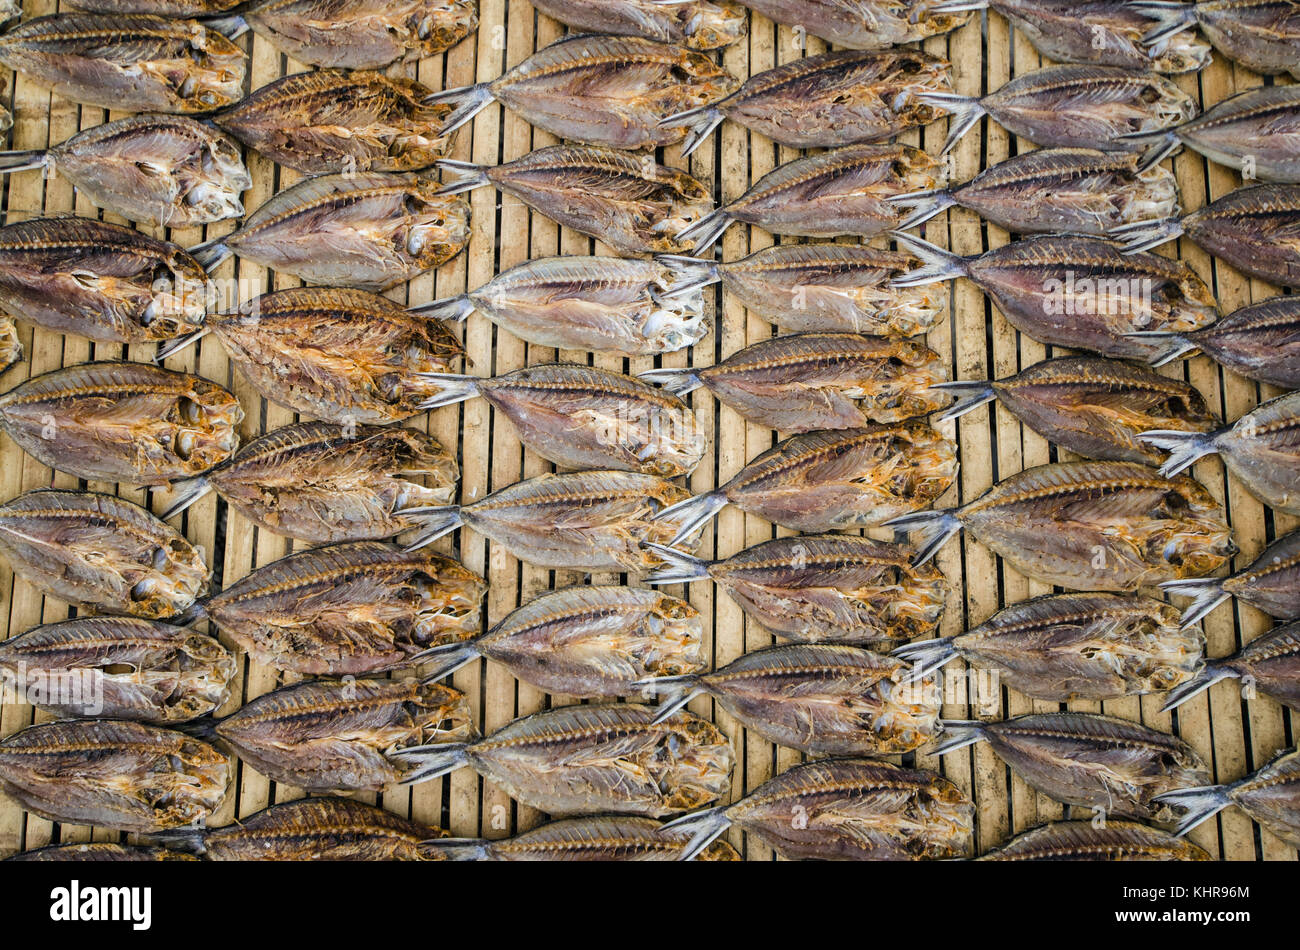 Secado de pescado en el mercado de pescado, Islas banda, Mar de banda, Indonesia Foto de stock